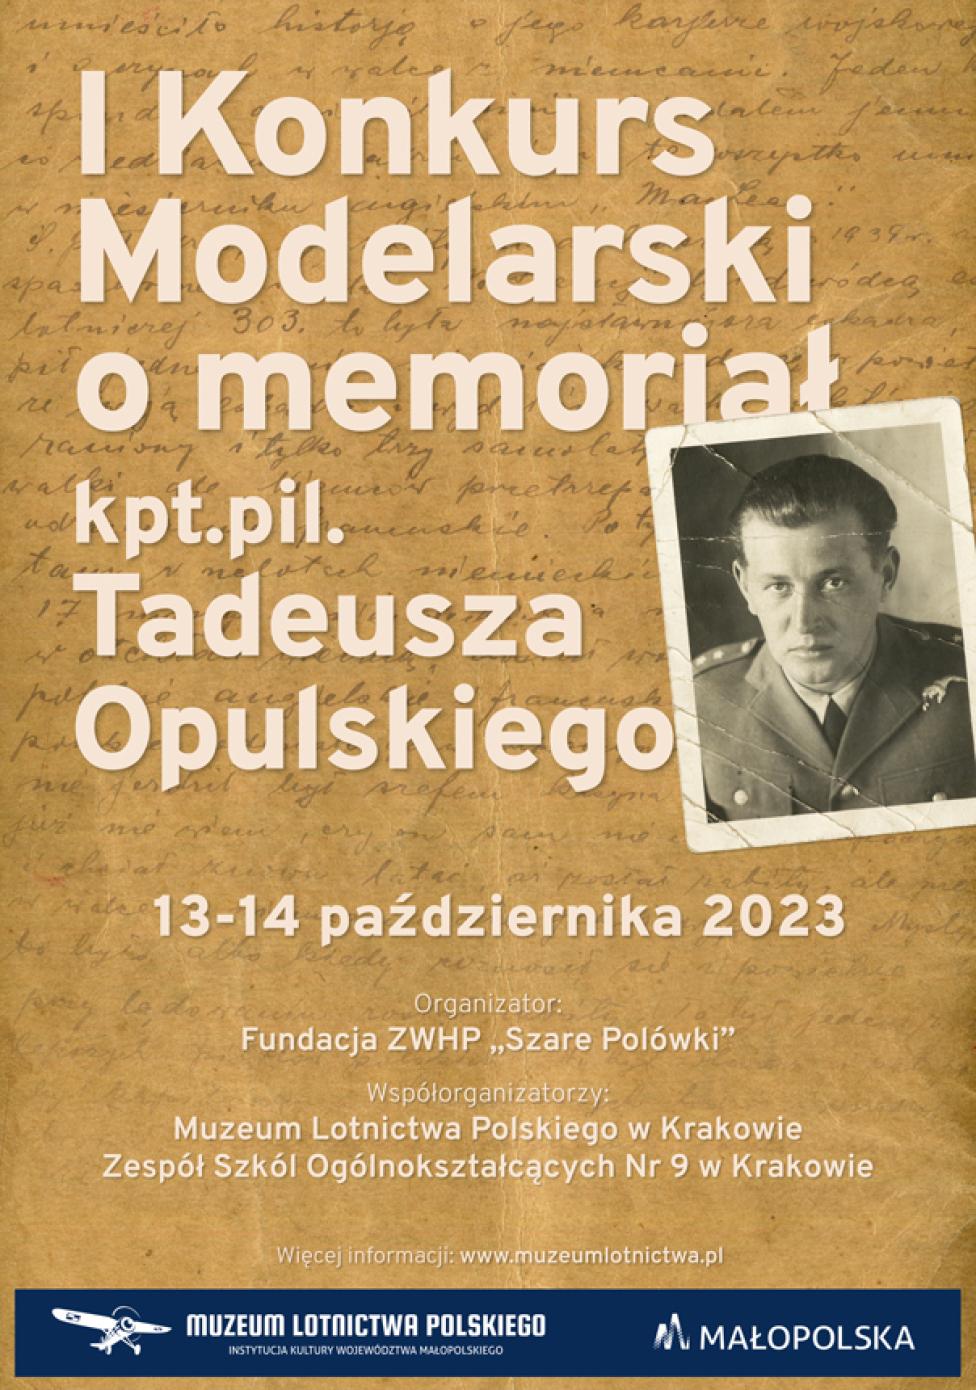 Konkurs Modelarski o memoriał kpt. pil. Tadeusza Opulskiego w Krakowie (fot. Muzeum Lotnictwa Polskiego)